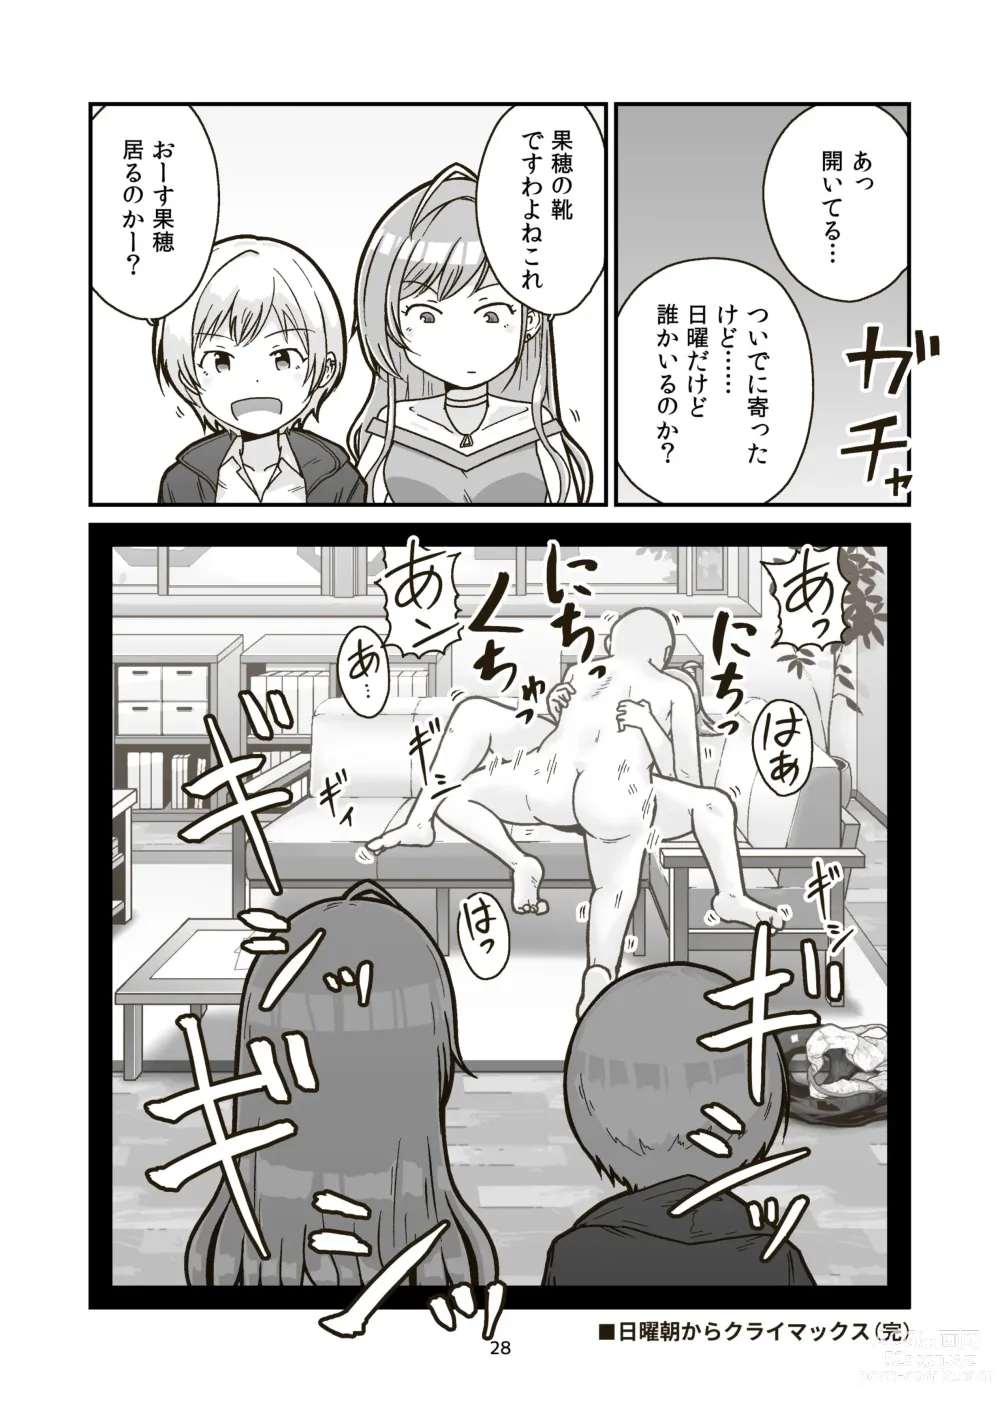 Page 27 of doujinshi Nichiyou Asa kara Climax